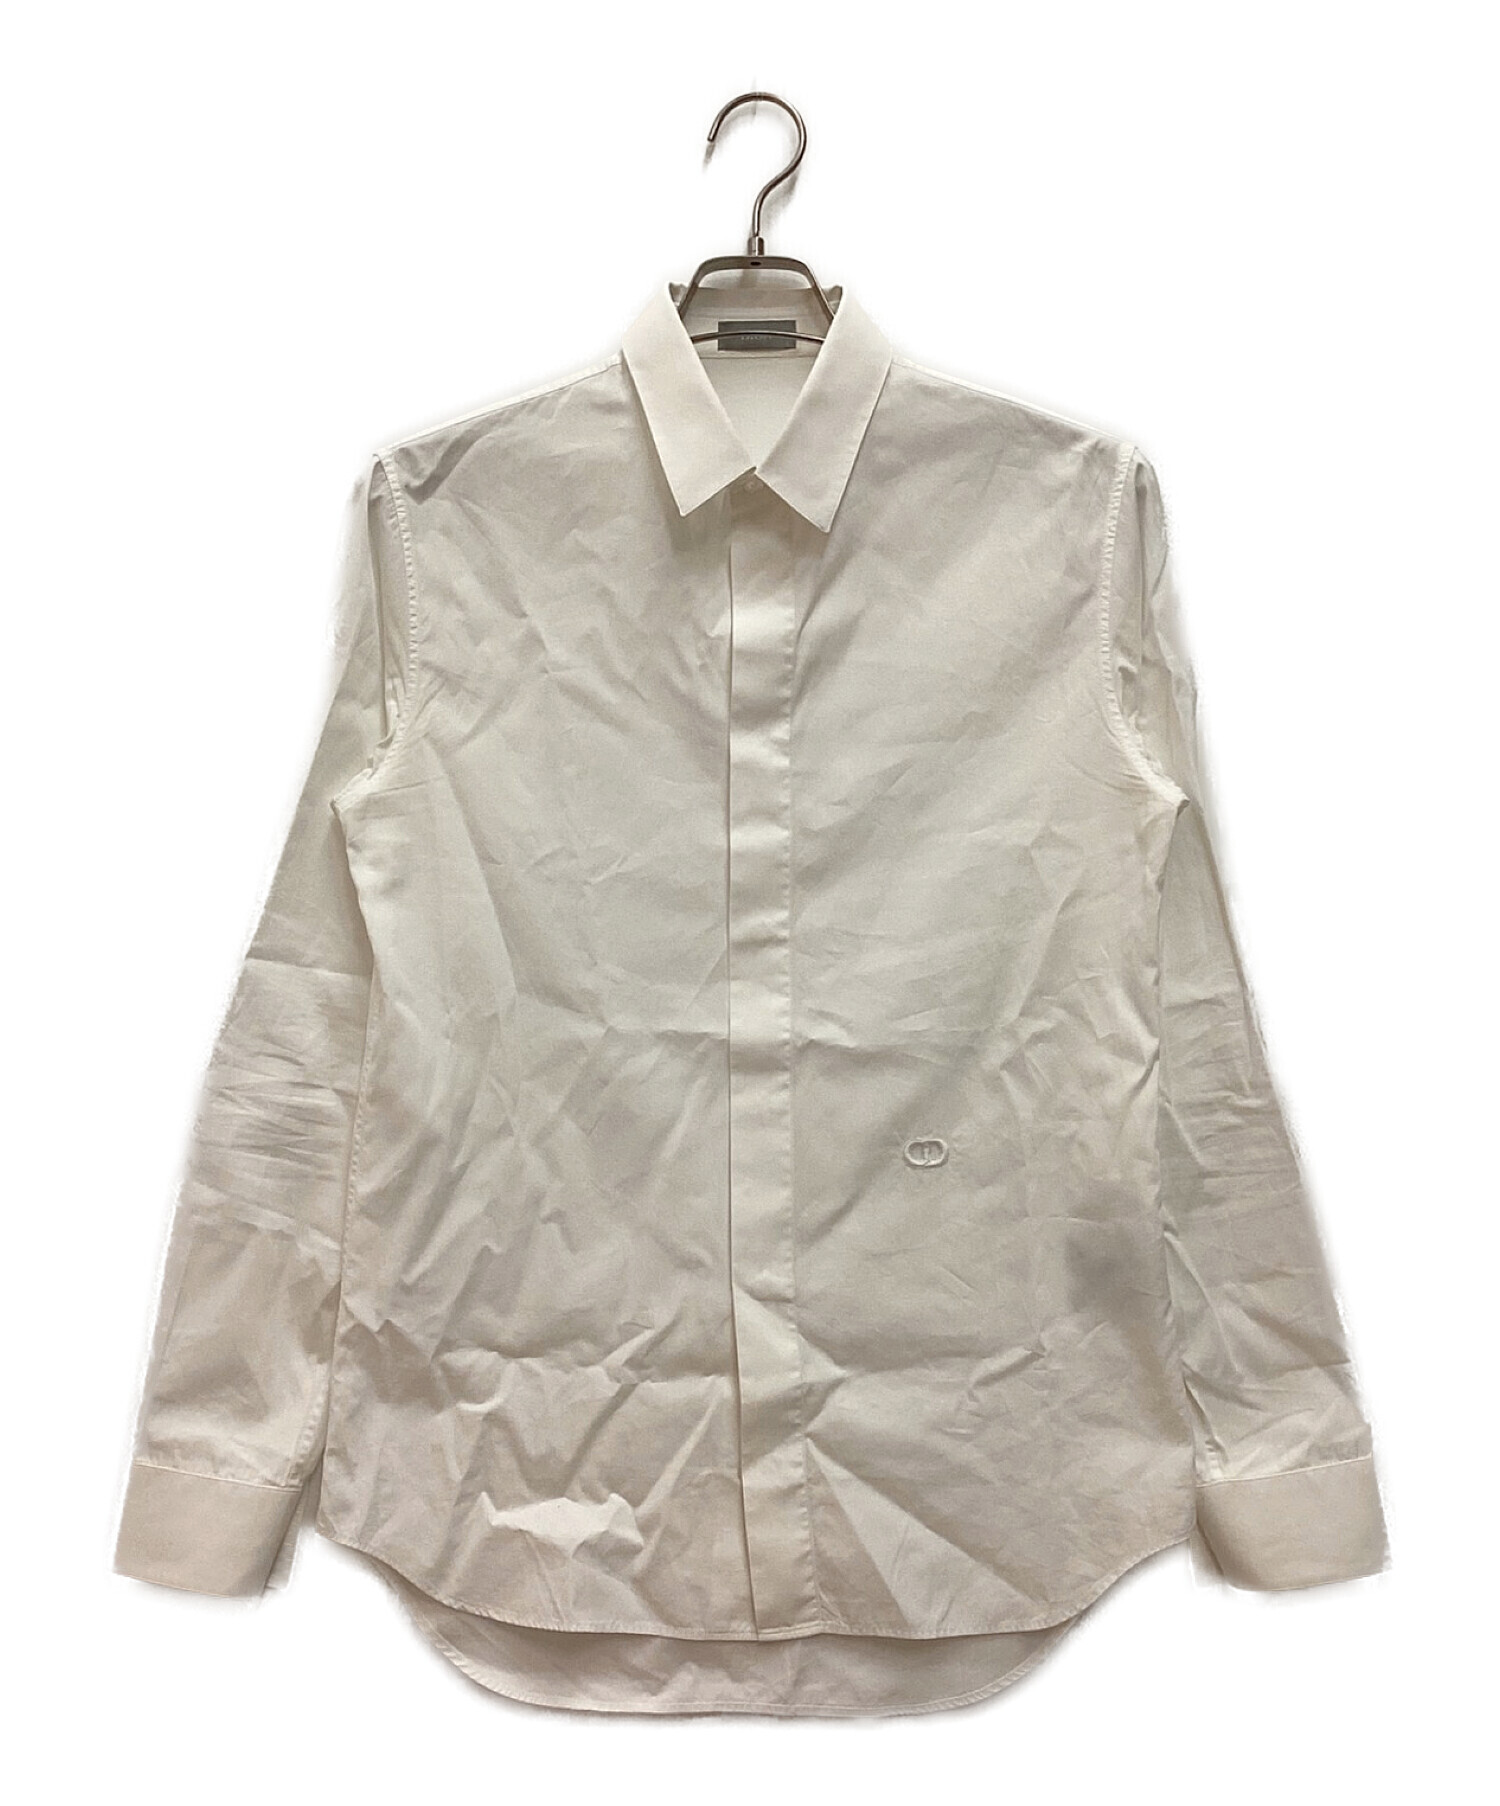 正規レア ディオールオム スタンドカラー 細身ドレスシャツ 白 最小36 メンズ